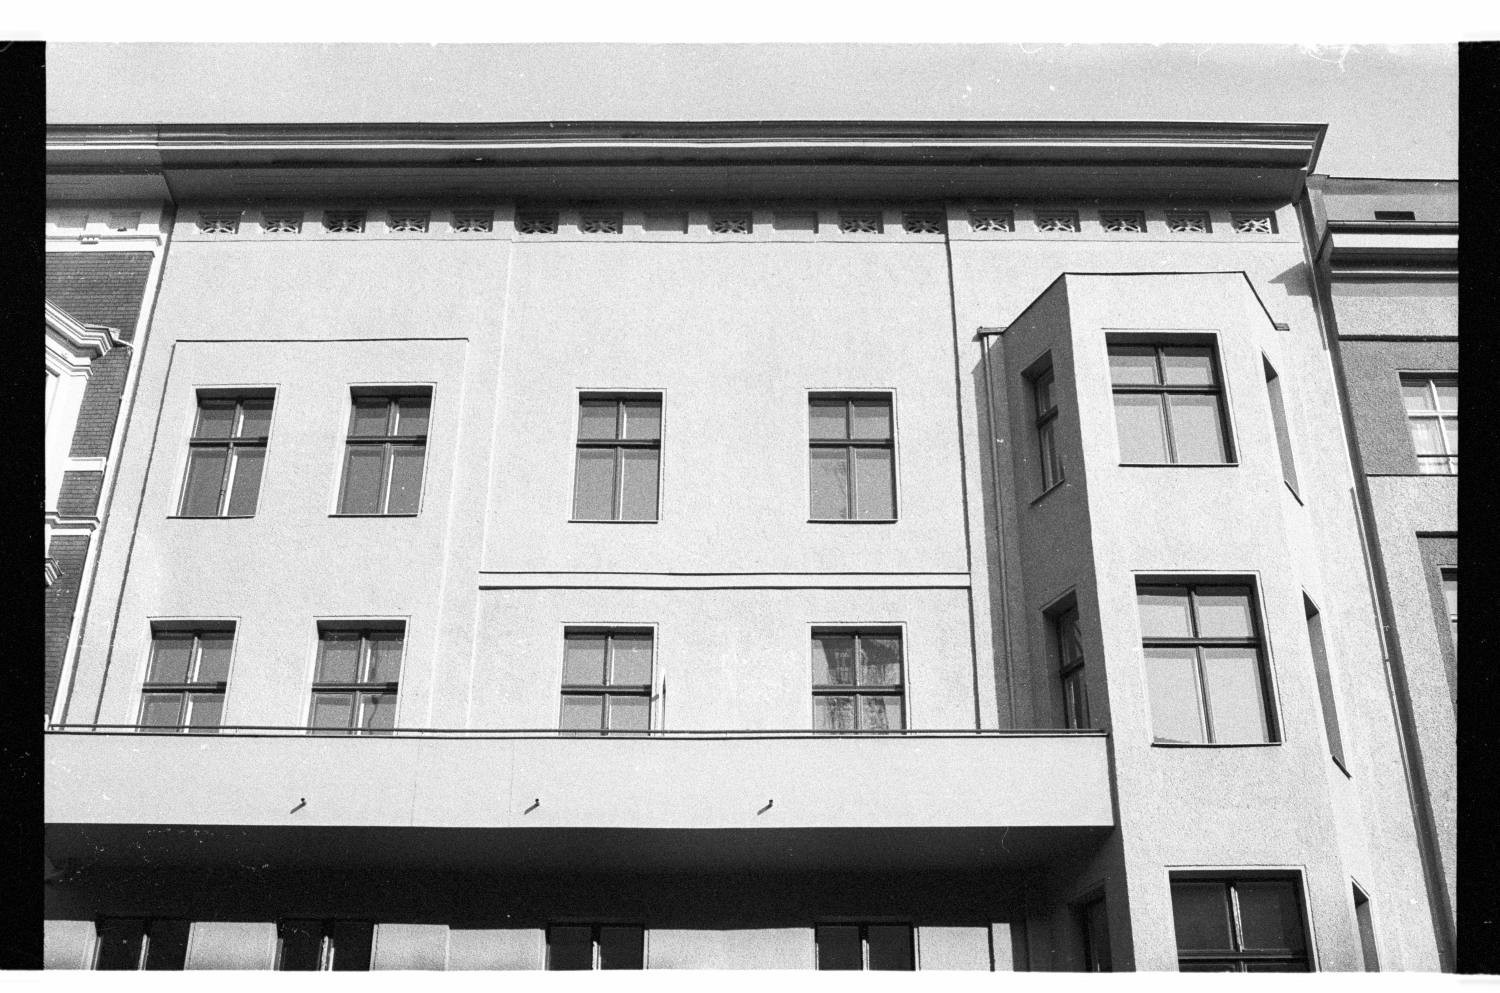 Kleinbildnegative: Mietshaus, Winterfeldtstr. 20, 1982 (Museen Tempelhof-Schöneberg/Jürgen Henschel RR-F)